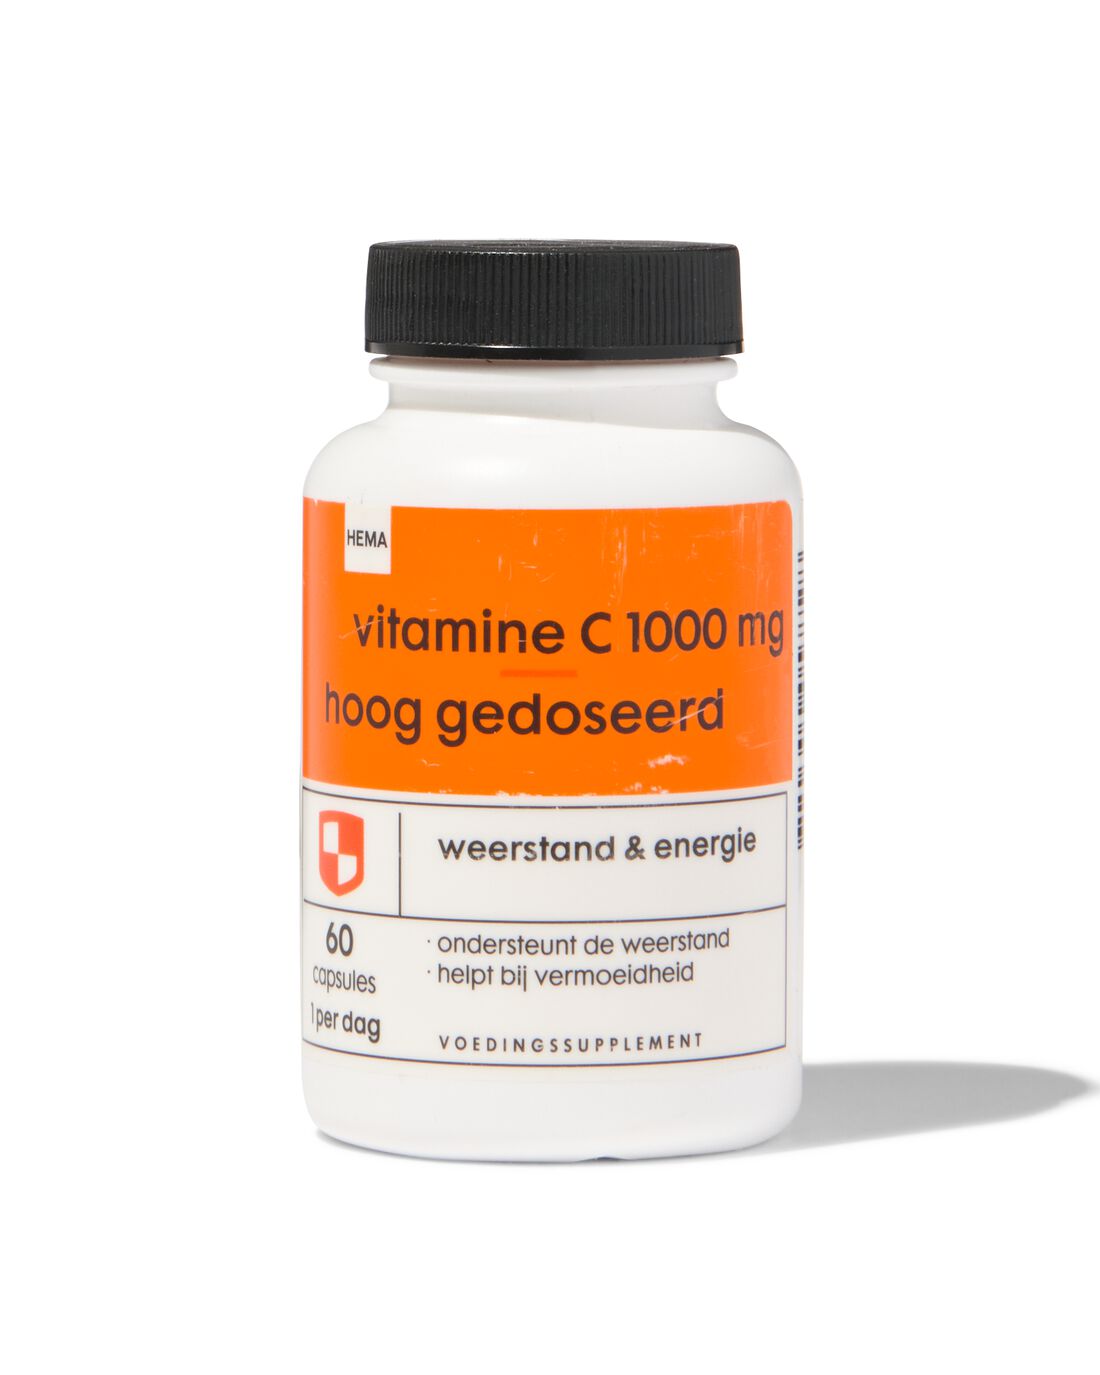 HEMA Vitamine C-1000 Mg Hoog Gedoseerd 60 Stuks